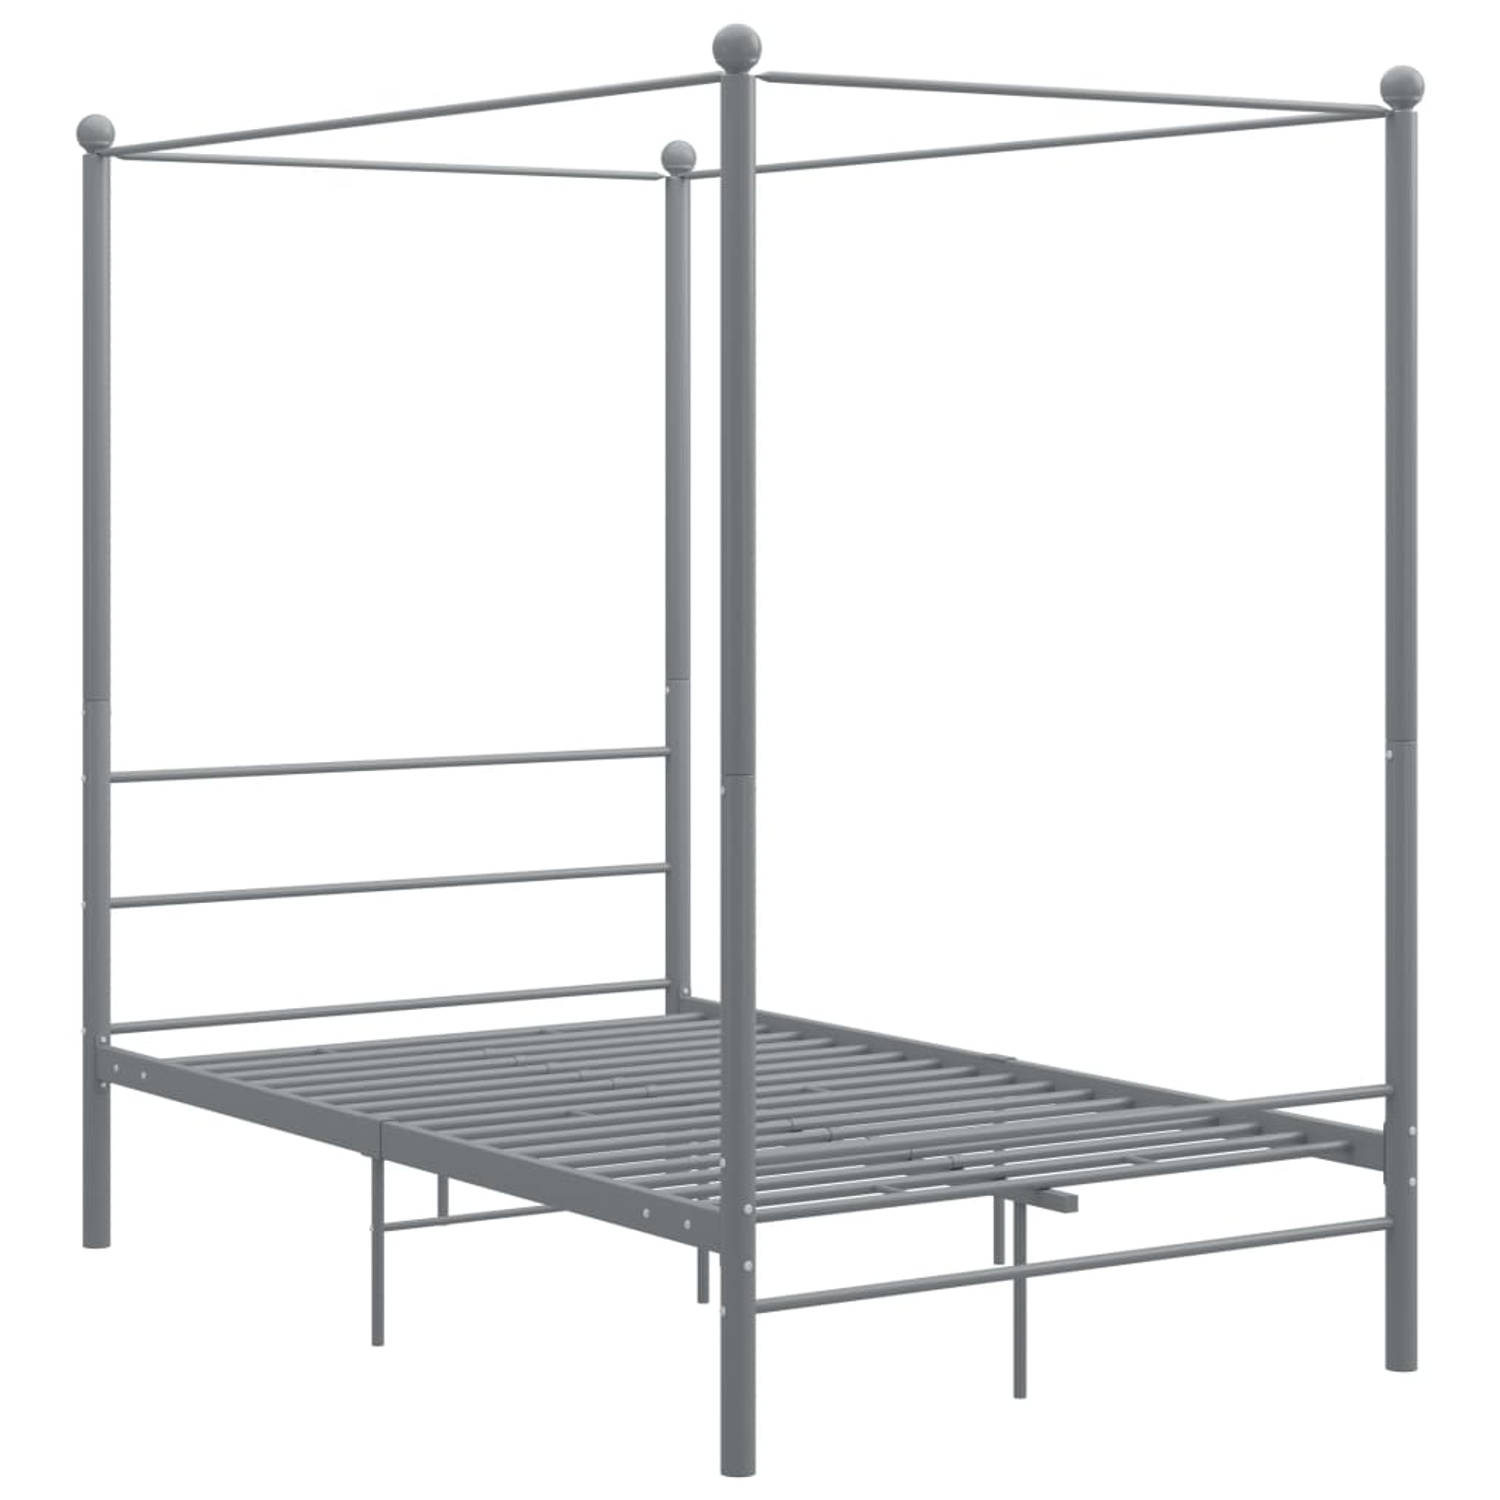 The Living Store Hemelbedframe metaal grijs 120x200 cm - Bedframe - Bedframe - Bed Frame - Bed Frames - Bed - Bedden - Metalen Bedframe - Metalen Bedframes - 2-persoonsbed - 2